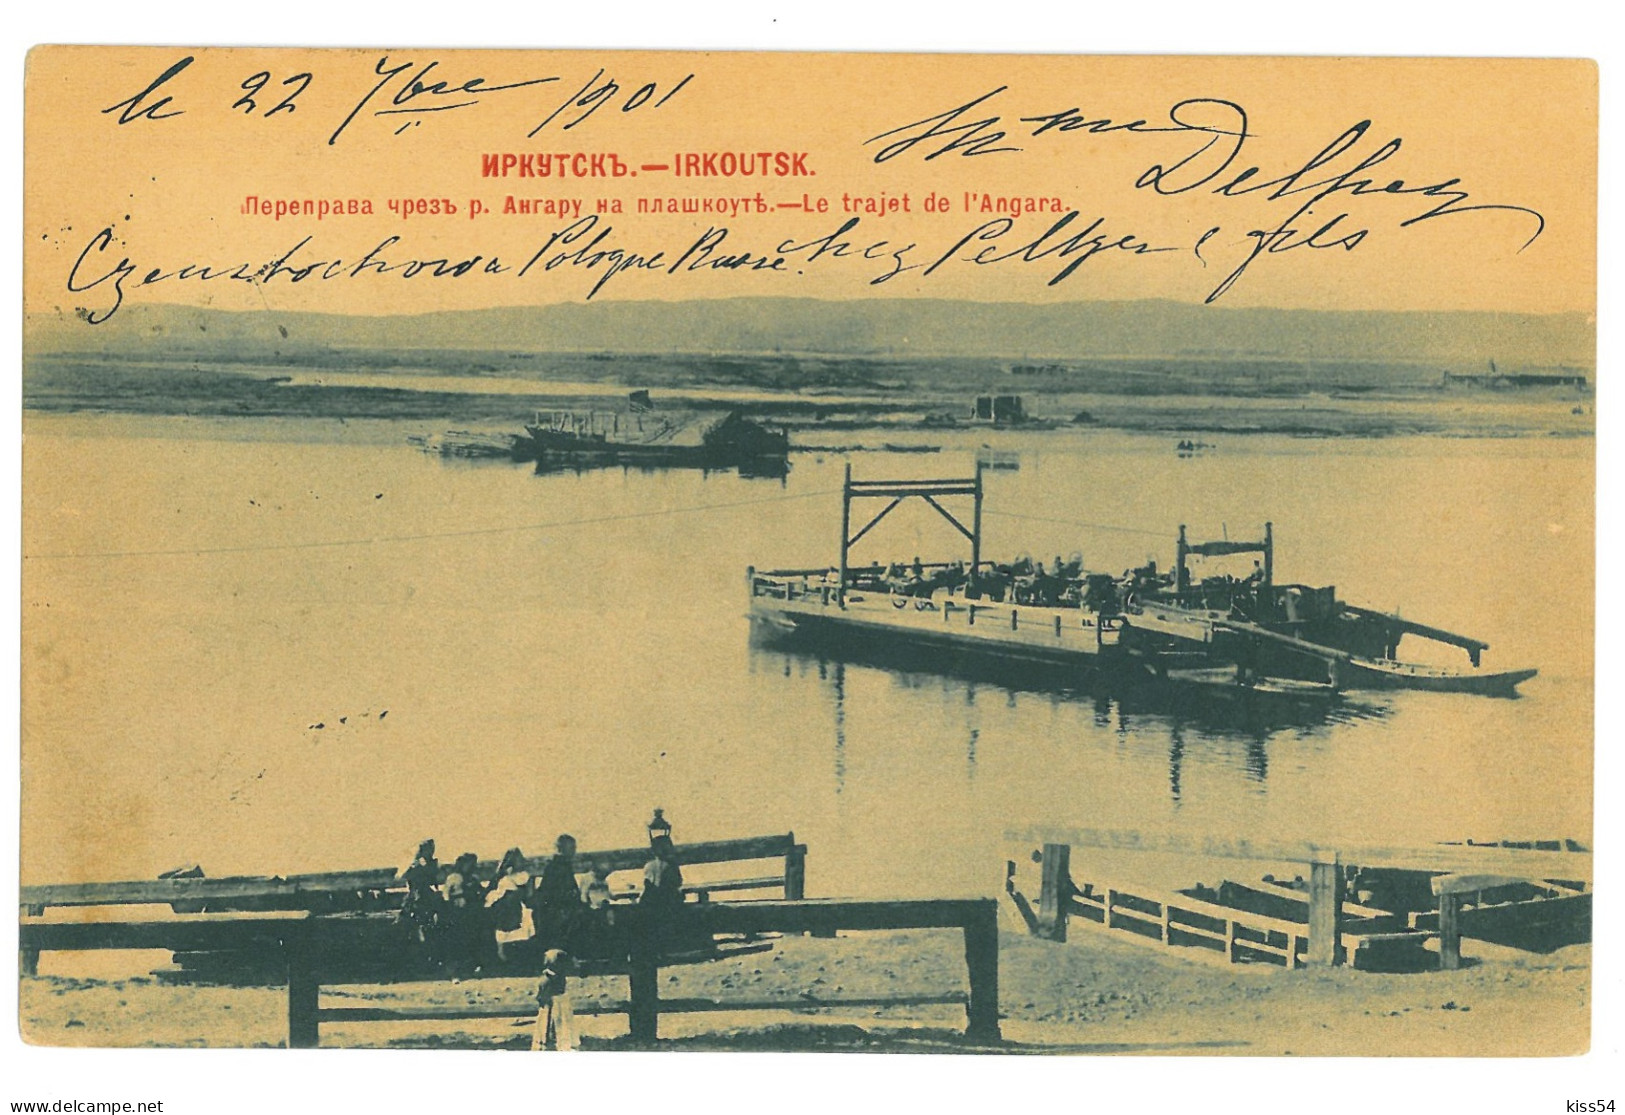 RUS 43 - 19655 IRKUTSK Fery On River Angara, Russia - Old Postcard - Used - 1901 - Russland